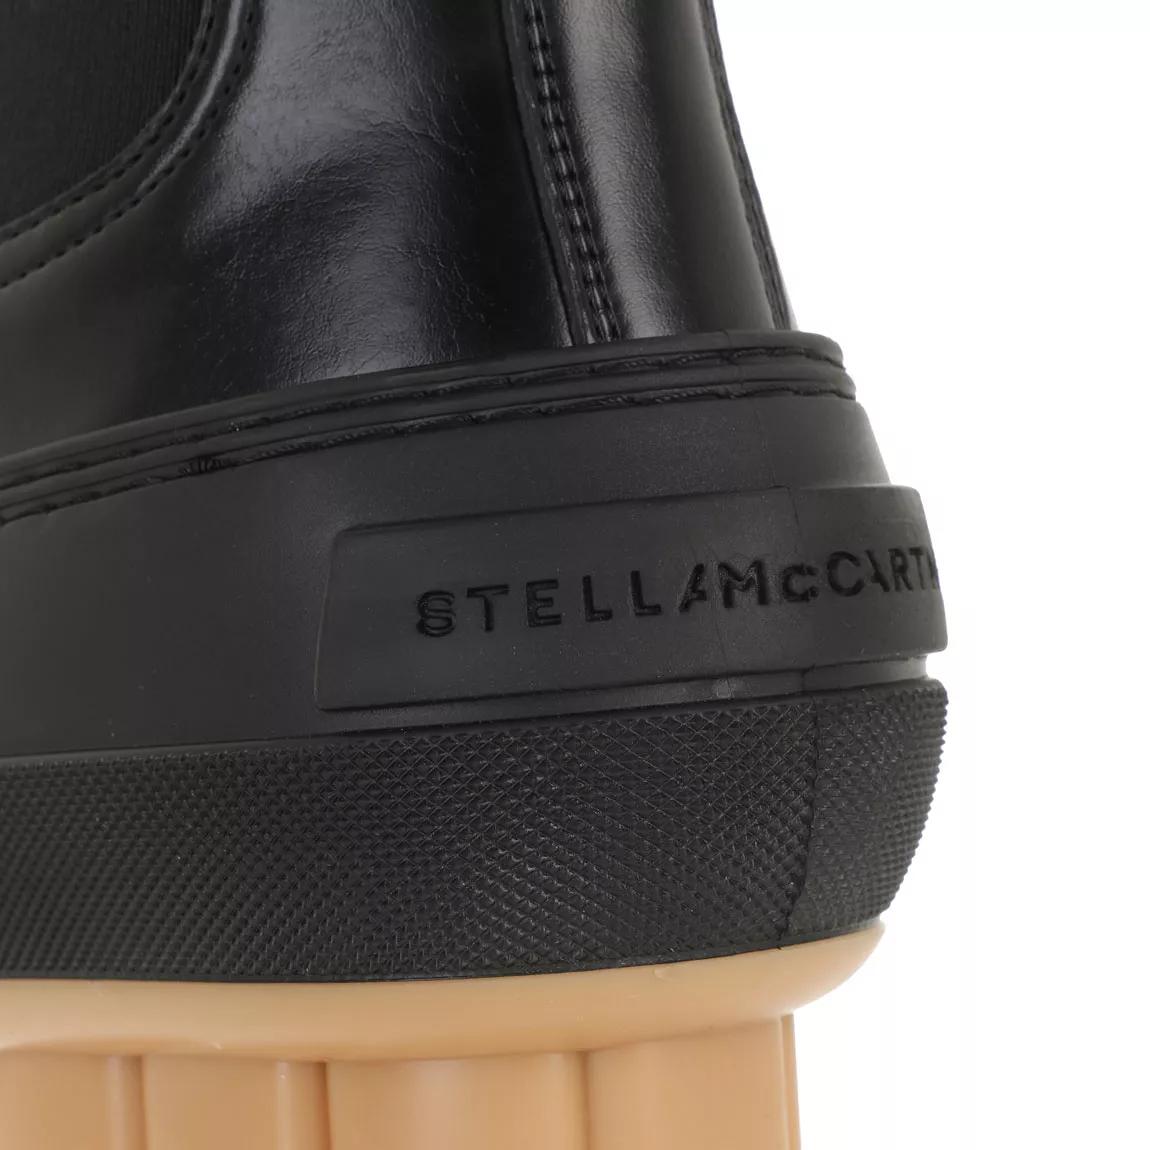 Stella McCartney Boots & Stiefeletten - Boots Leather - Gr. 37 (EU) - in Schwarz - für Damen von Stella Mccartney